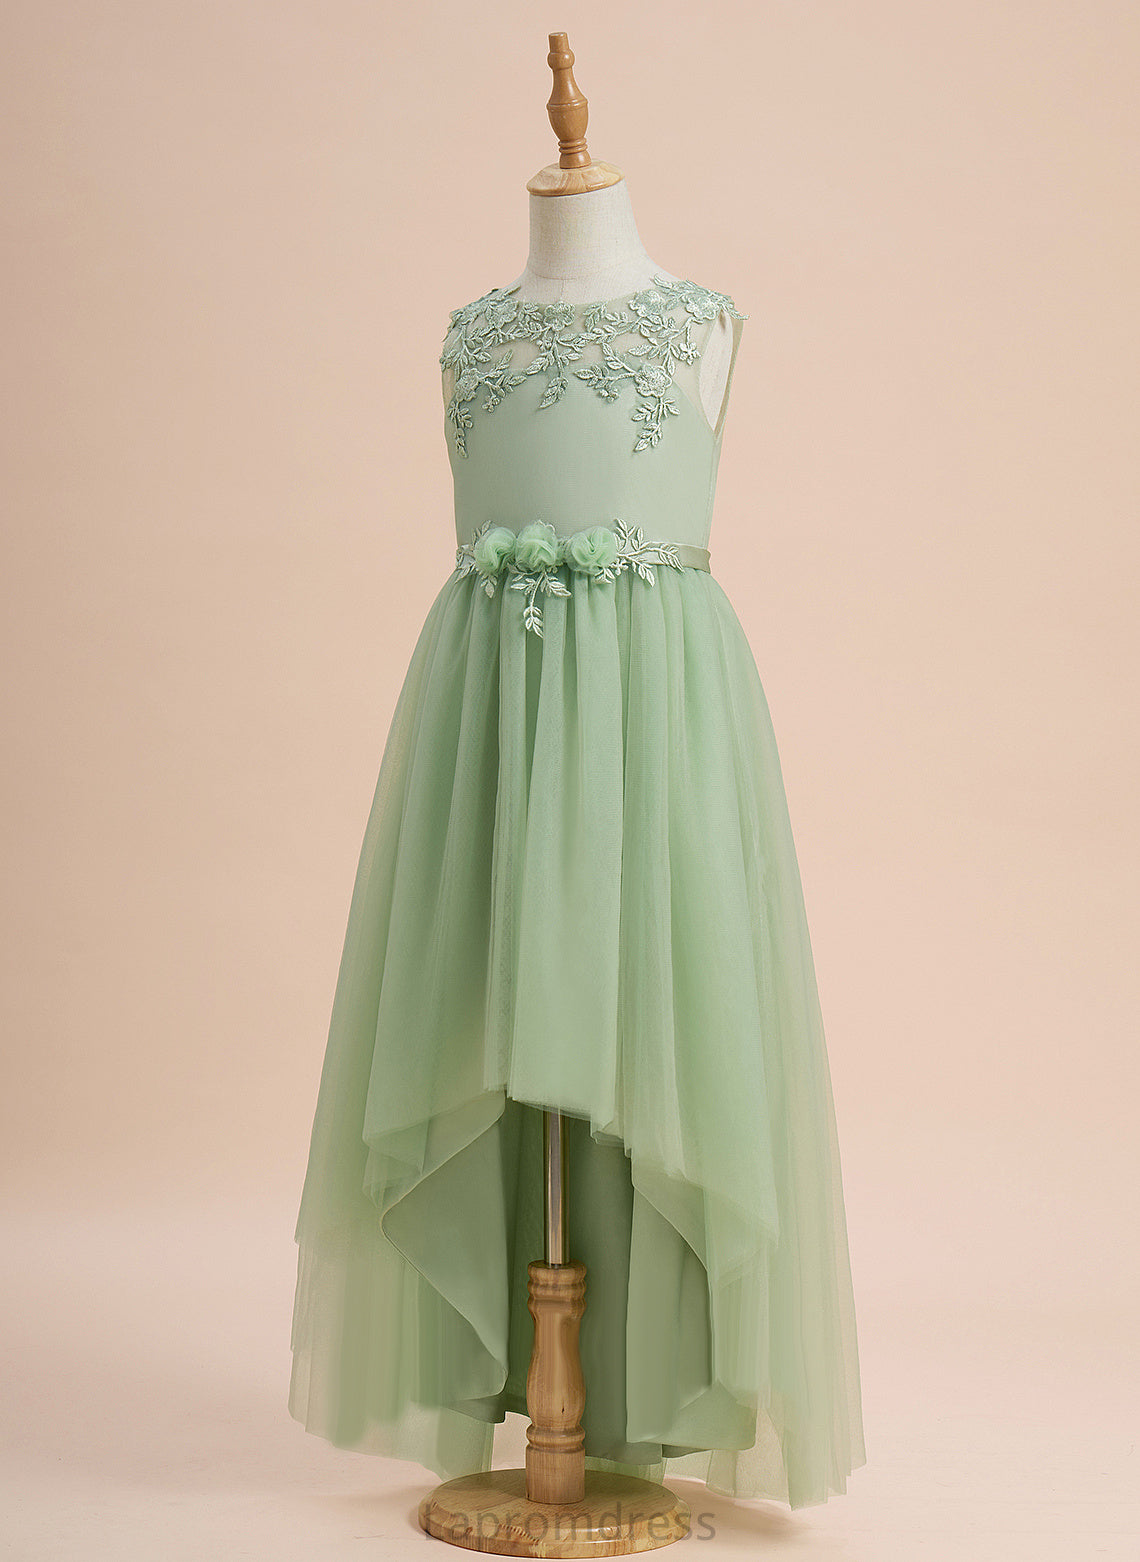 Lace/Flower(s) - Sleeveless Dress With Brenna Tulle Flower Scoop A-Line Neck Asymmetrical Girl Flower Girl Dresses